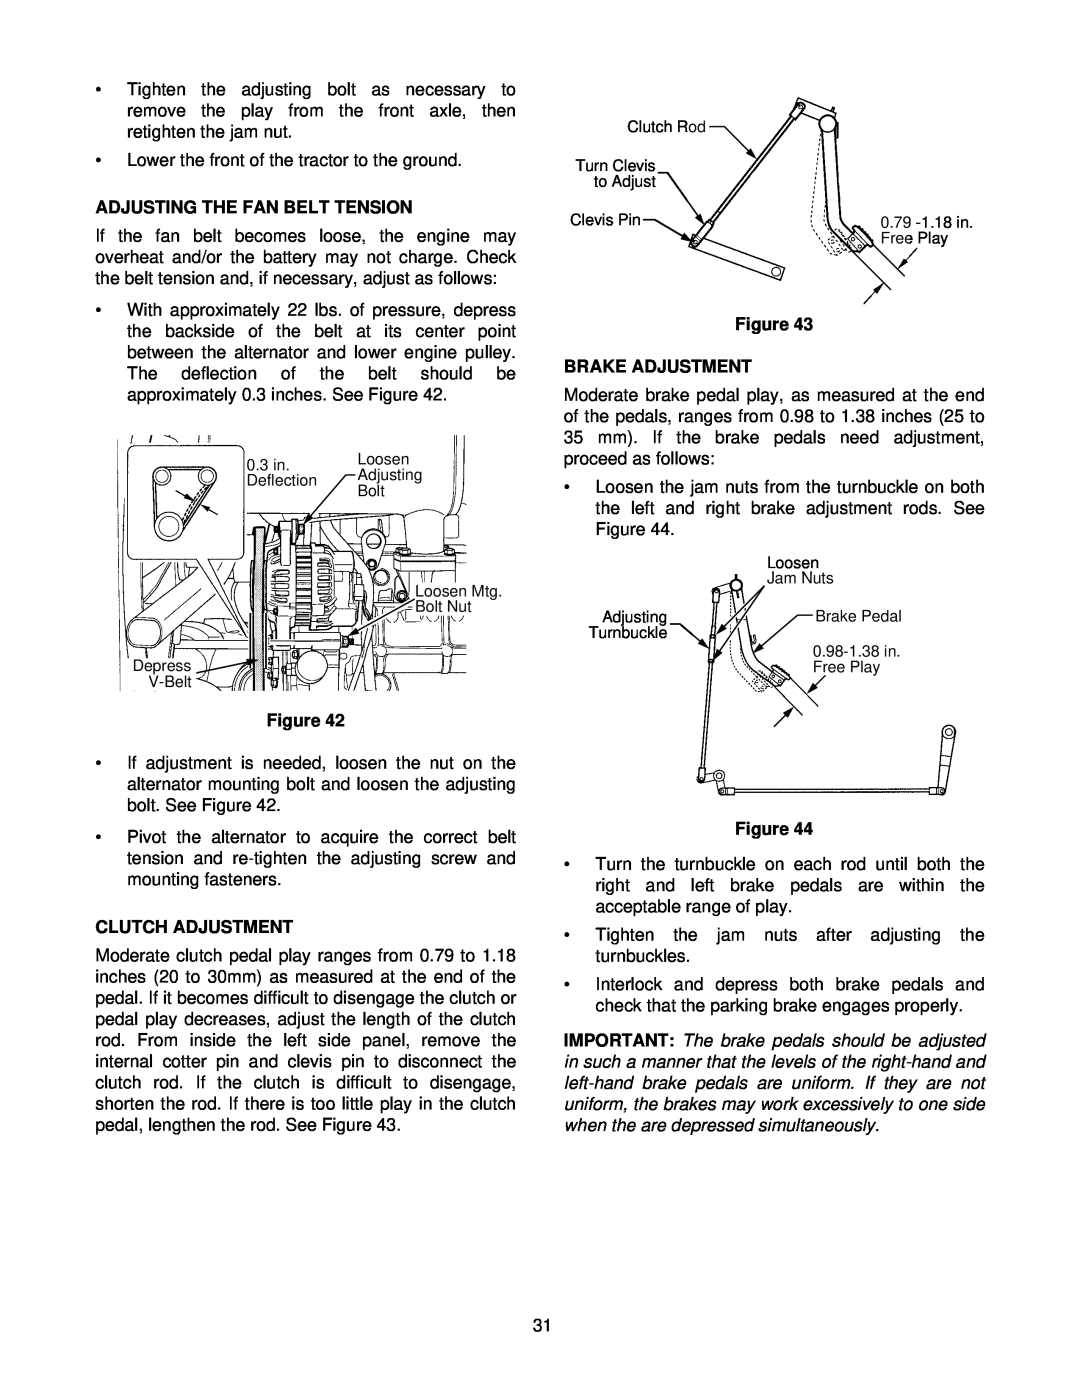 Cub Cadet 8354 manual Adjusting The Fan Belt Tension, Clutch Adjustment, Figure BRAKE ADJUSTMENT 